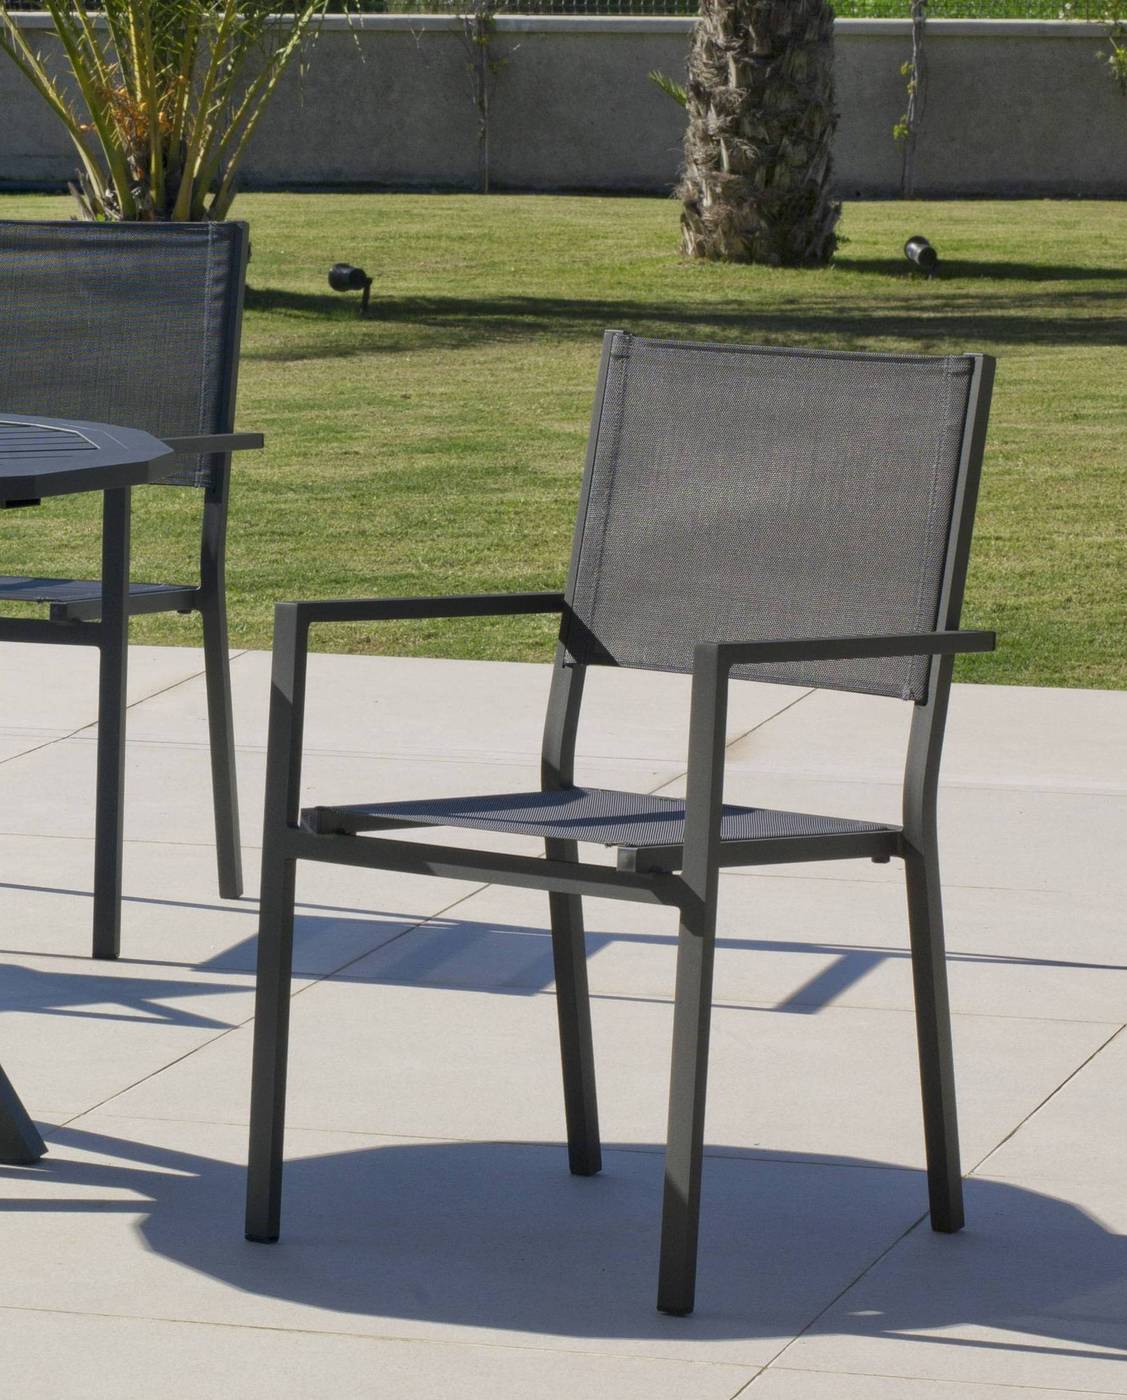 Set Aluminio Palma-Córcega 150-4 - Conjunto de aluminio: Mesa de comedor rectangular de 150 cm. + 4 sillones de textilen. Disponible en color blanco y antracita.